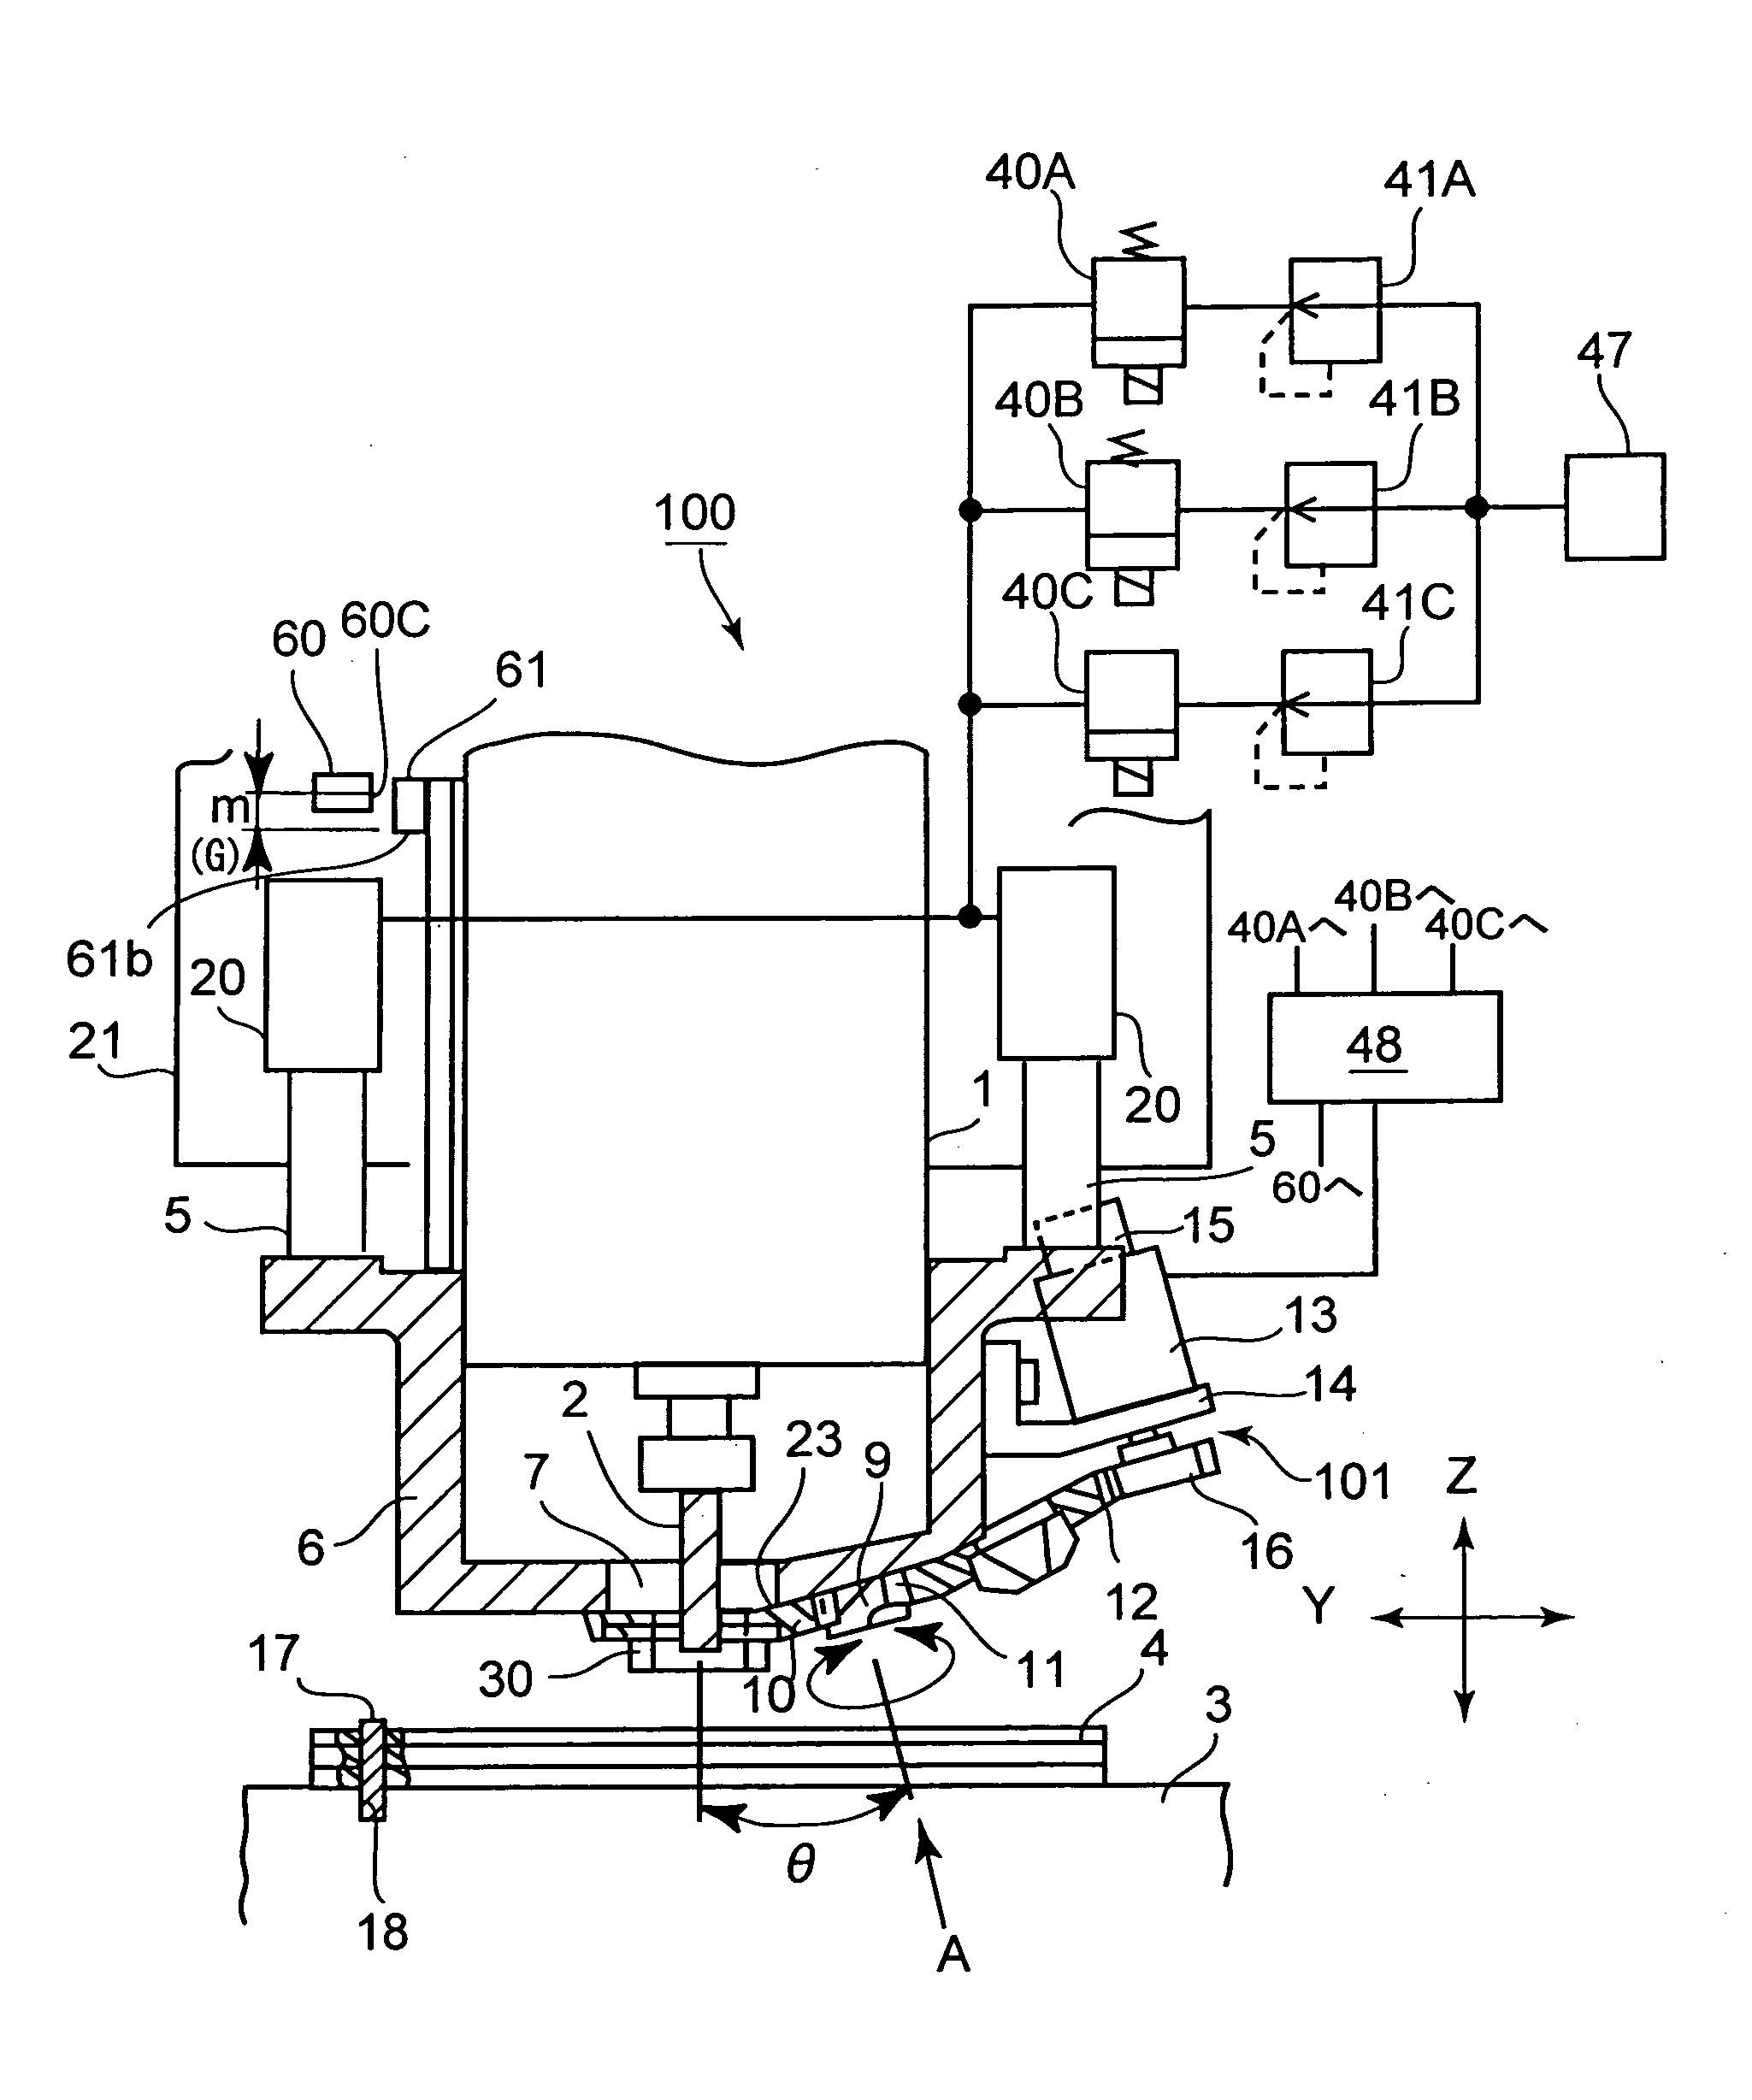 Printed circuit board machinging apparatus